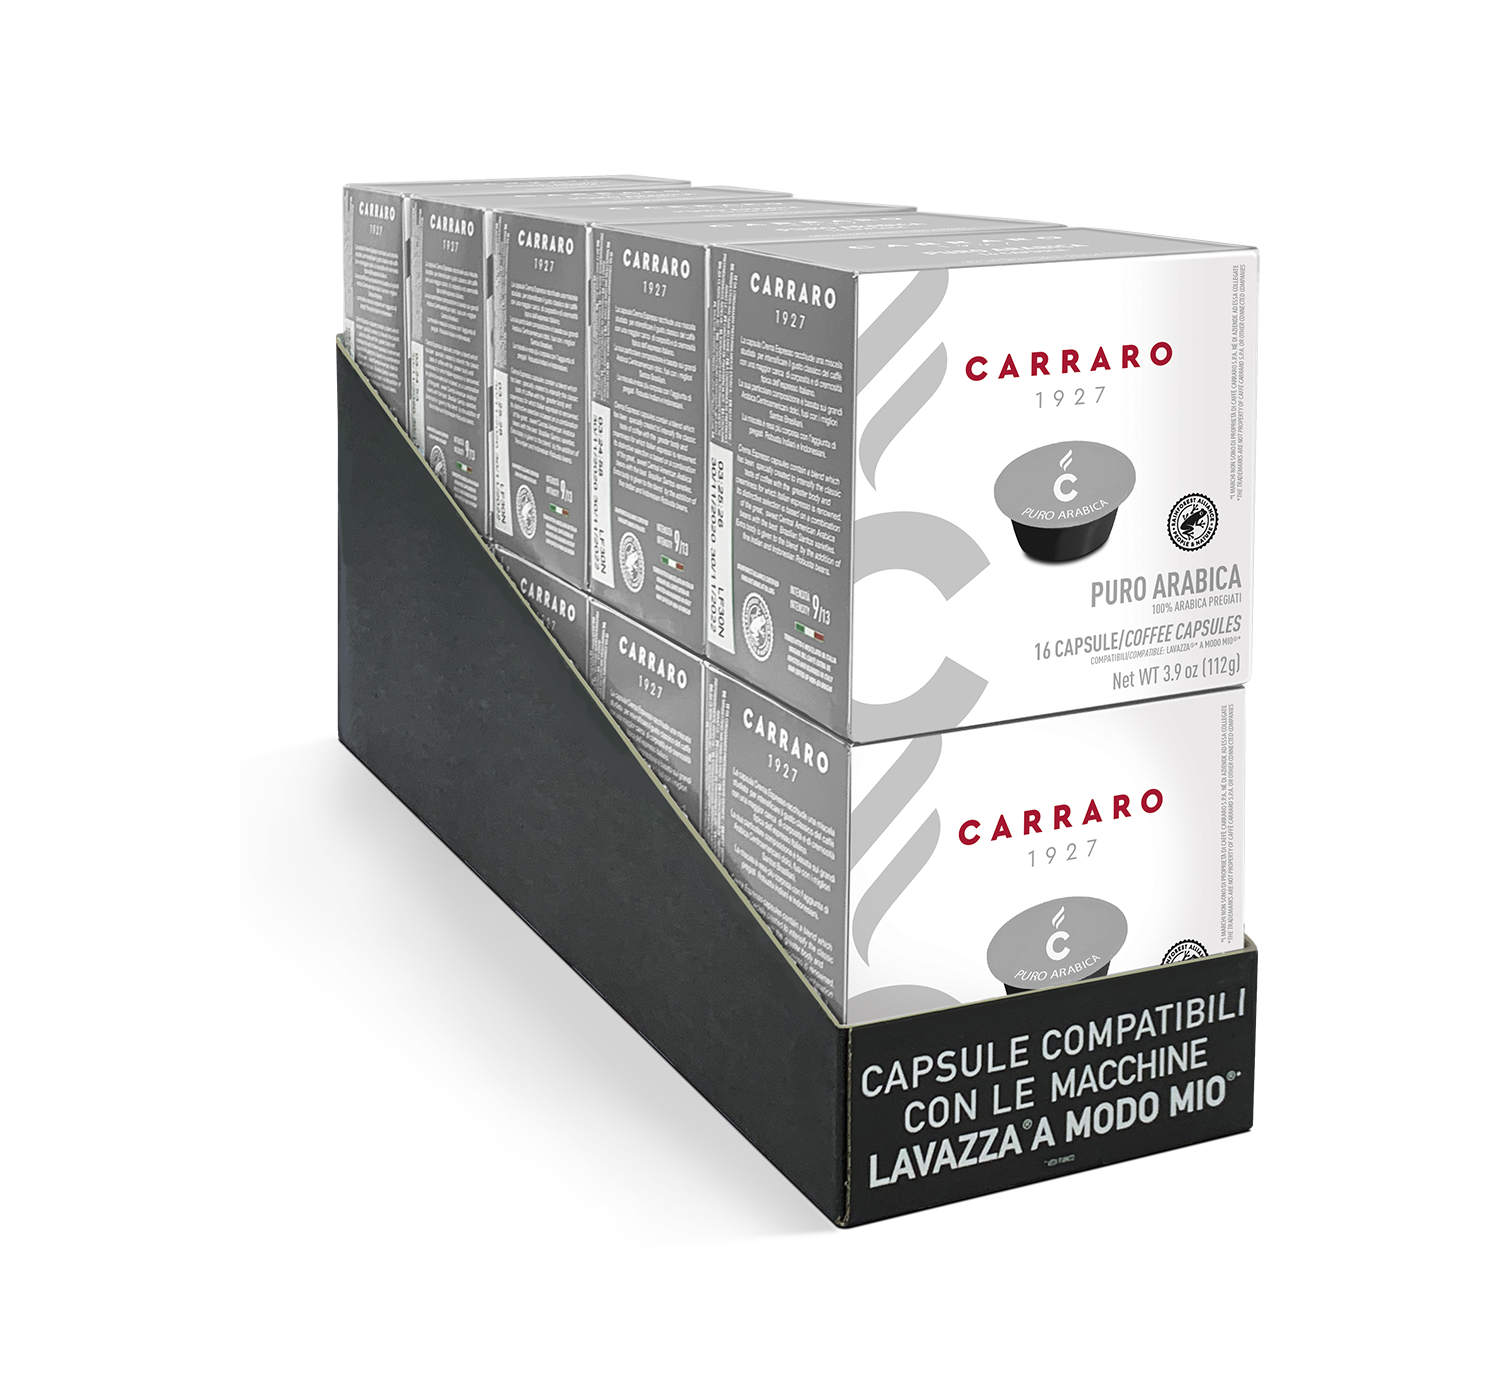 Capsules - Puro arabica – 10 BOXES OF 16 CAPSULES, 160 TOTAL A MODO MIO®* COMPATIBLE CAPSULES - Shop online Caffè Carraro